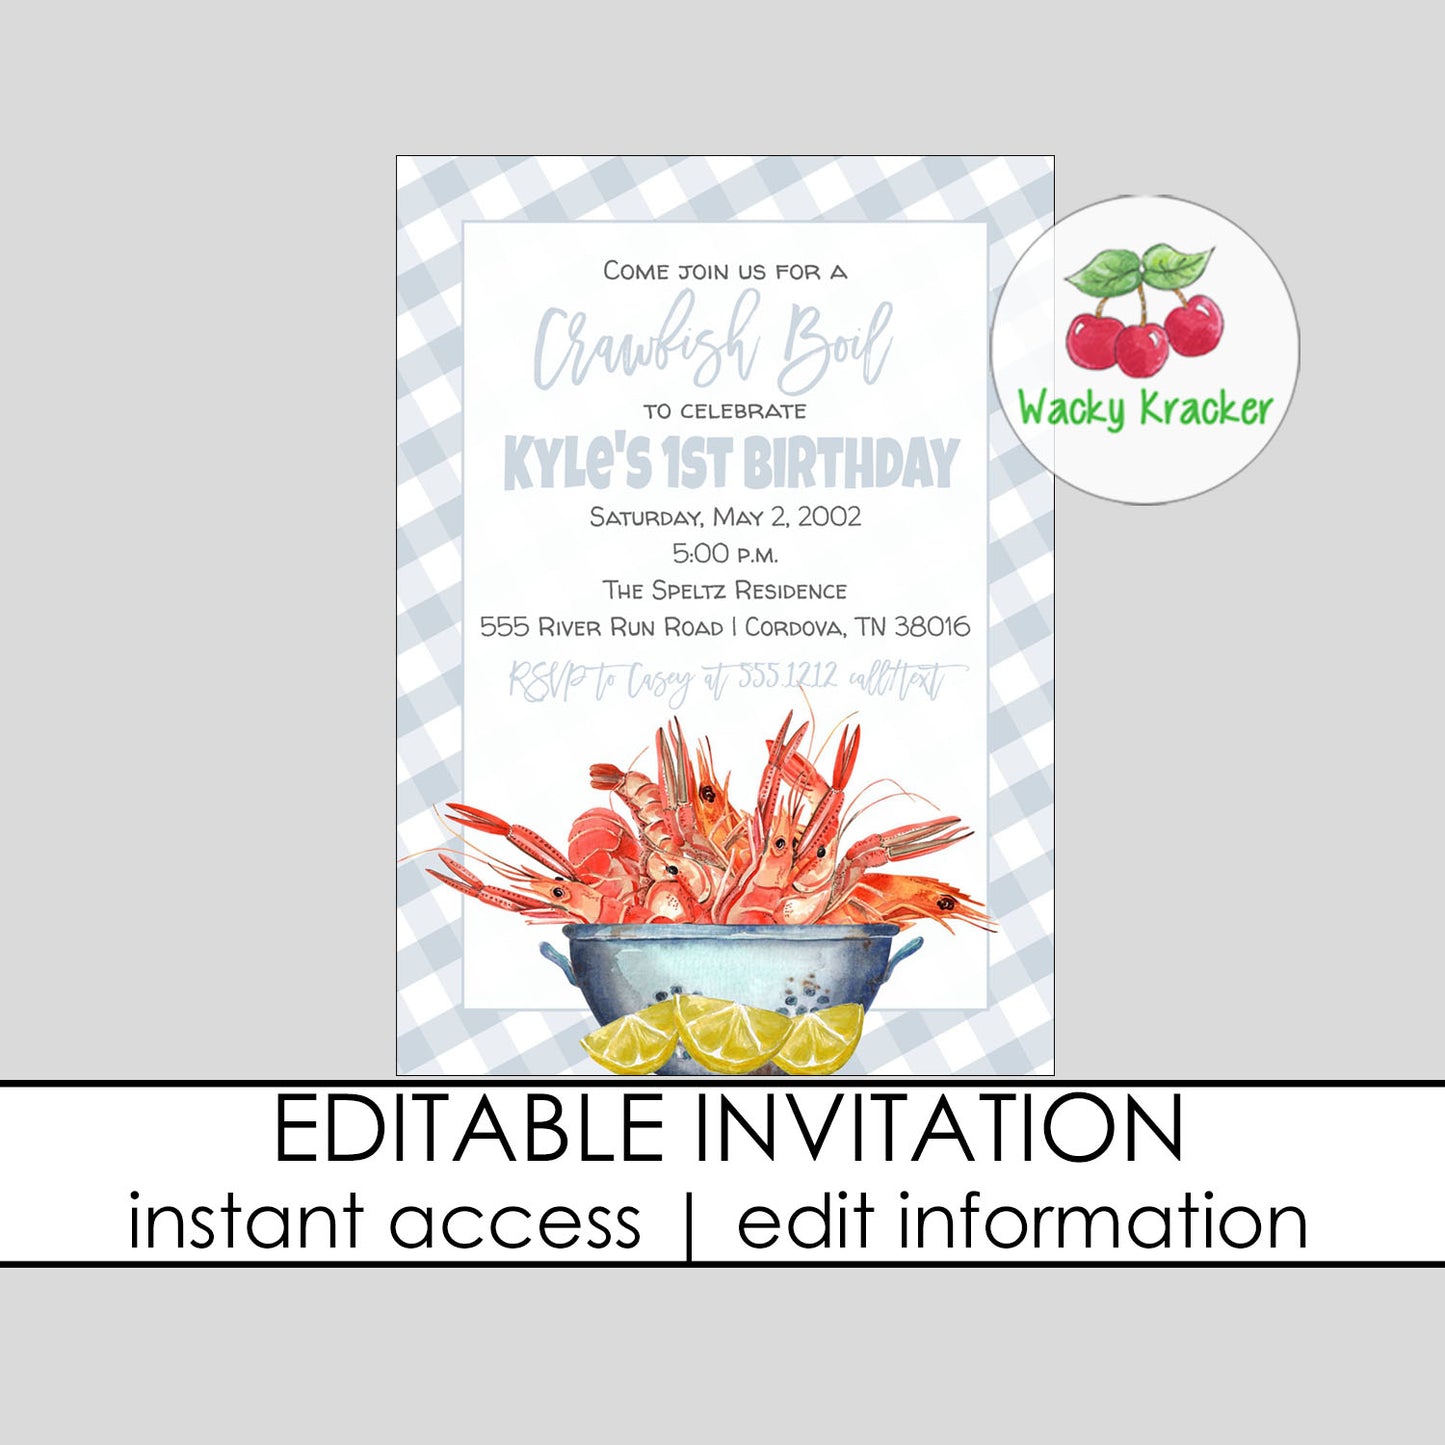 Crawfish Boy Birthday Party Invitation